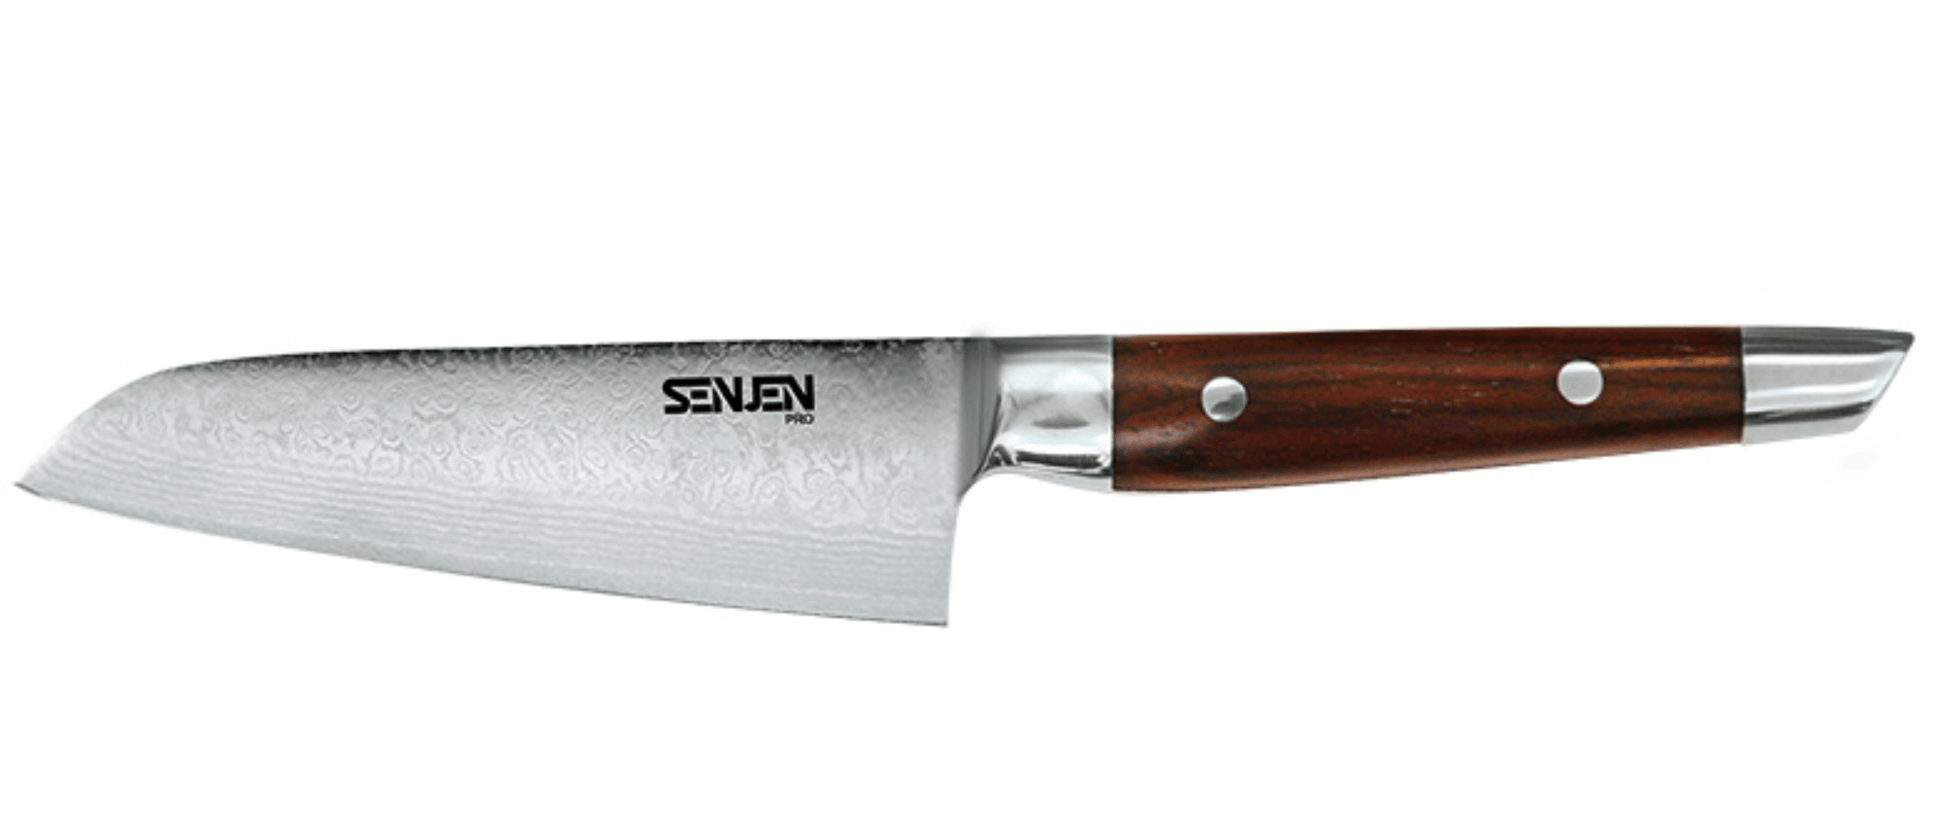 Senjen Pro Santokukniv, 1310mm | Senjen | Santoku kniv | Køkkenshop